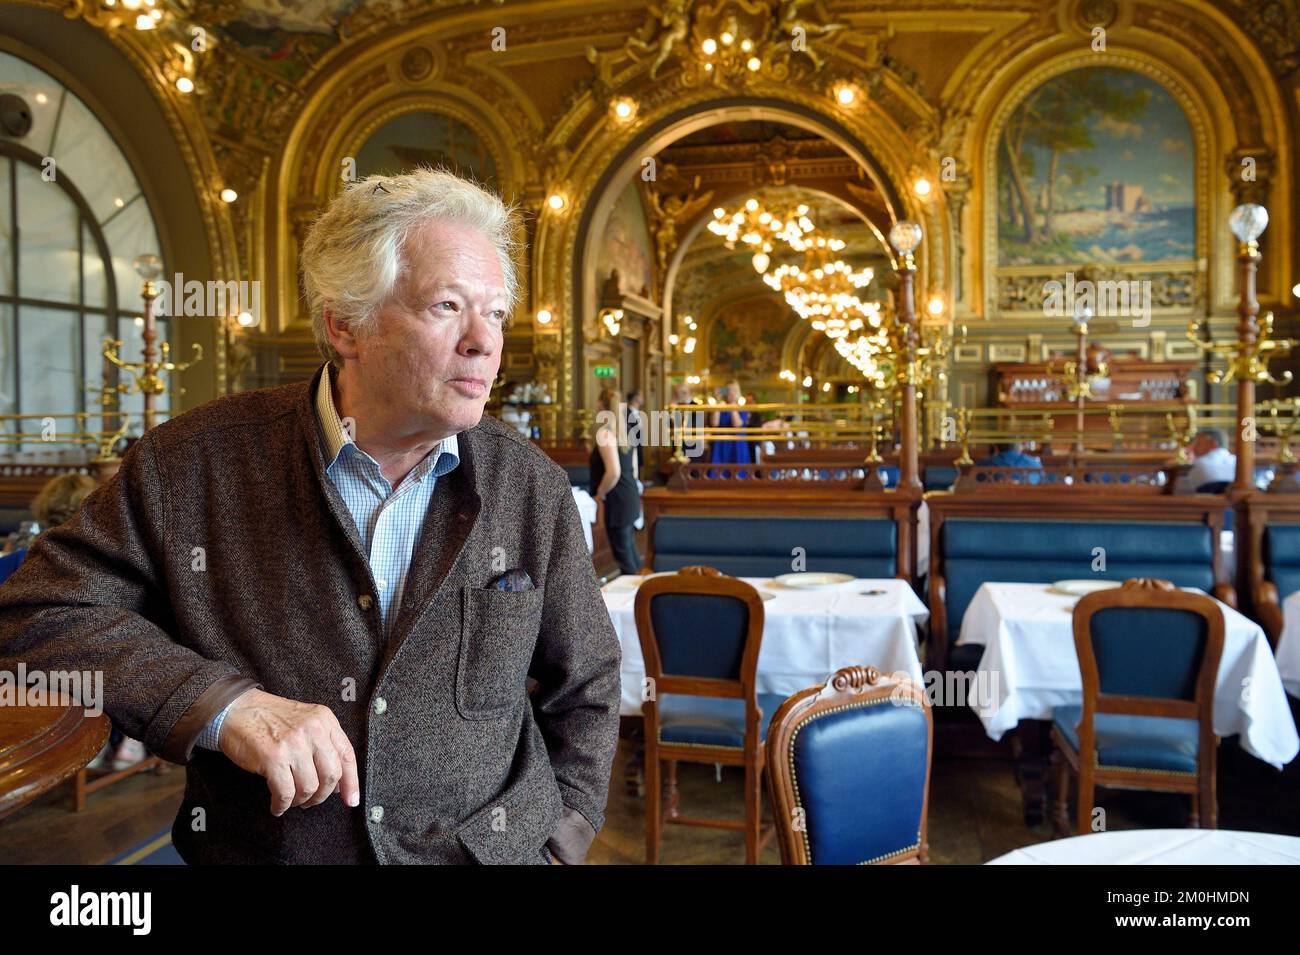 France, Paris, gare de Lyon (train station), restaurant Le Train bleu, Gilles Pudlowski Stock Photo